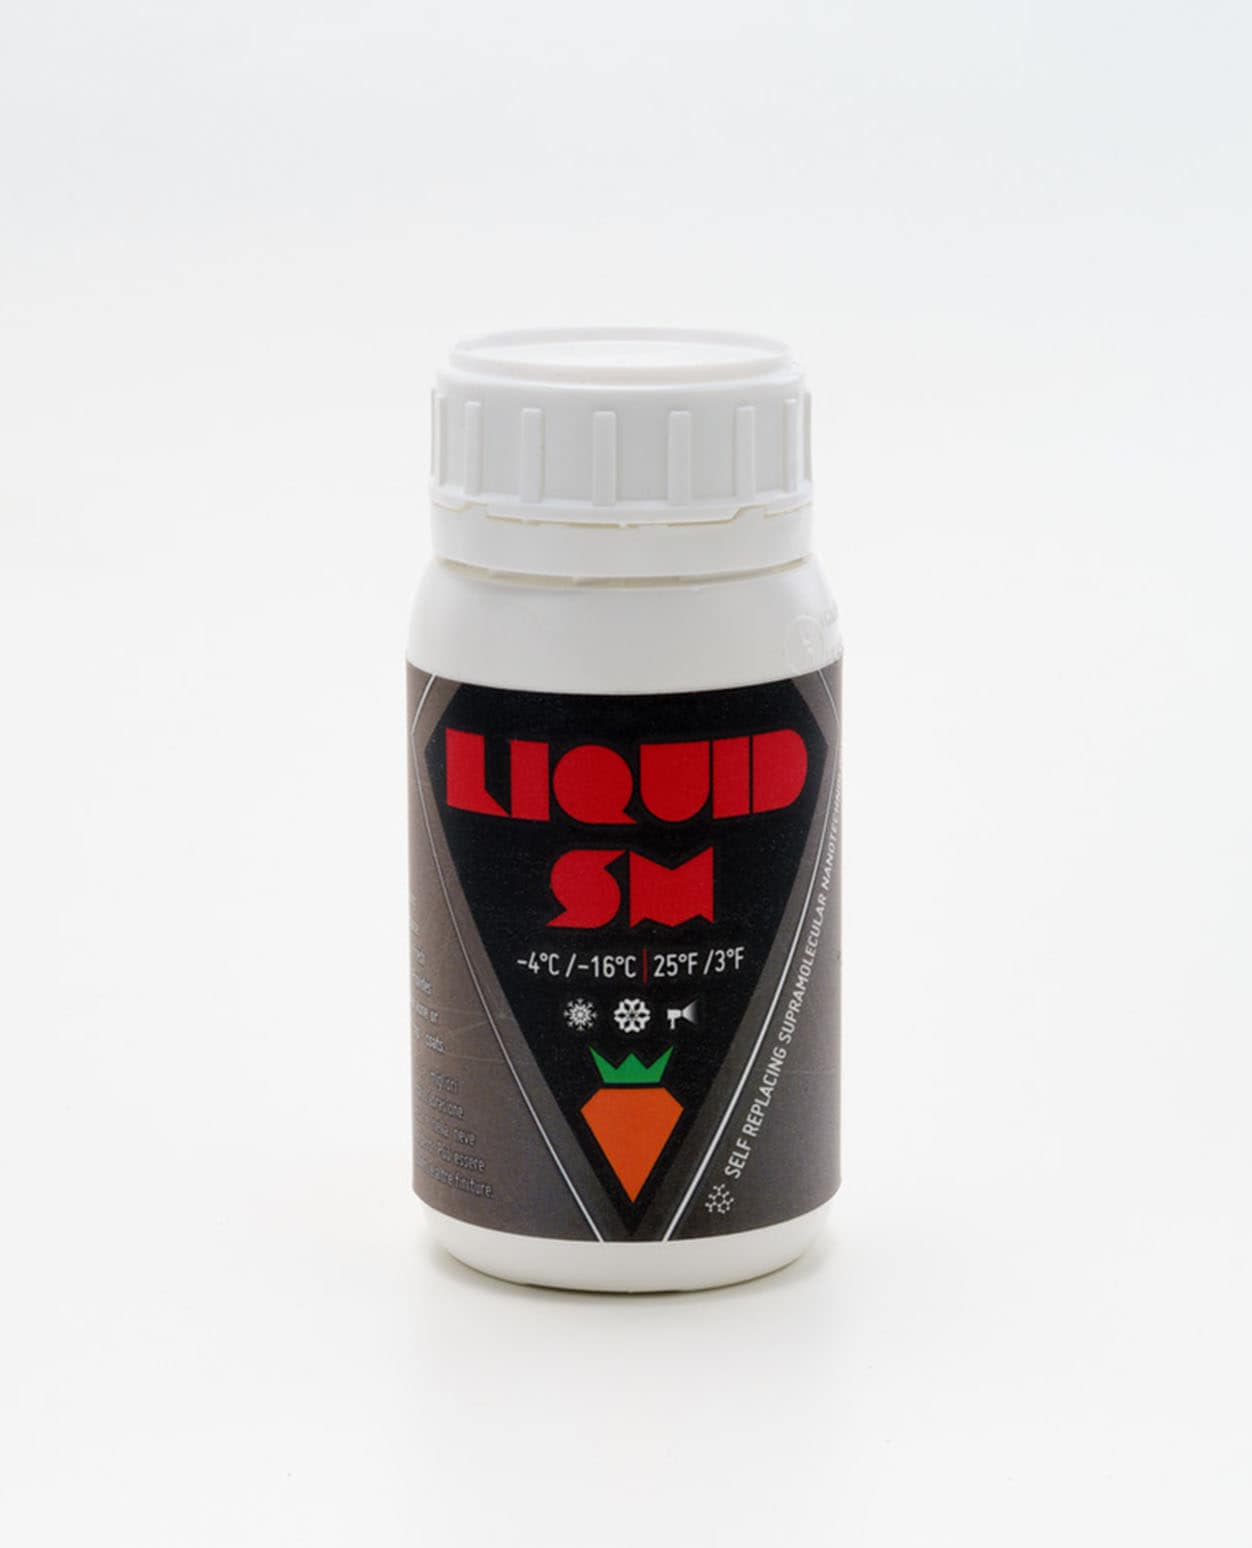 Carrot Liquid Surfactant Minus -4°C/-16°C 